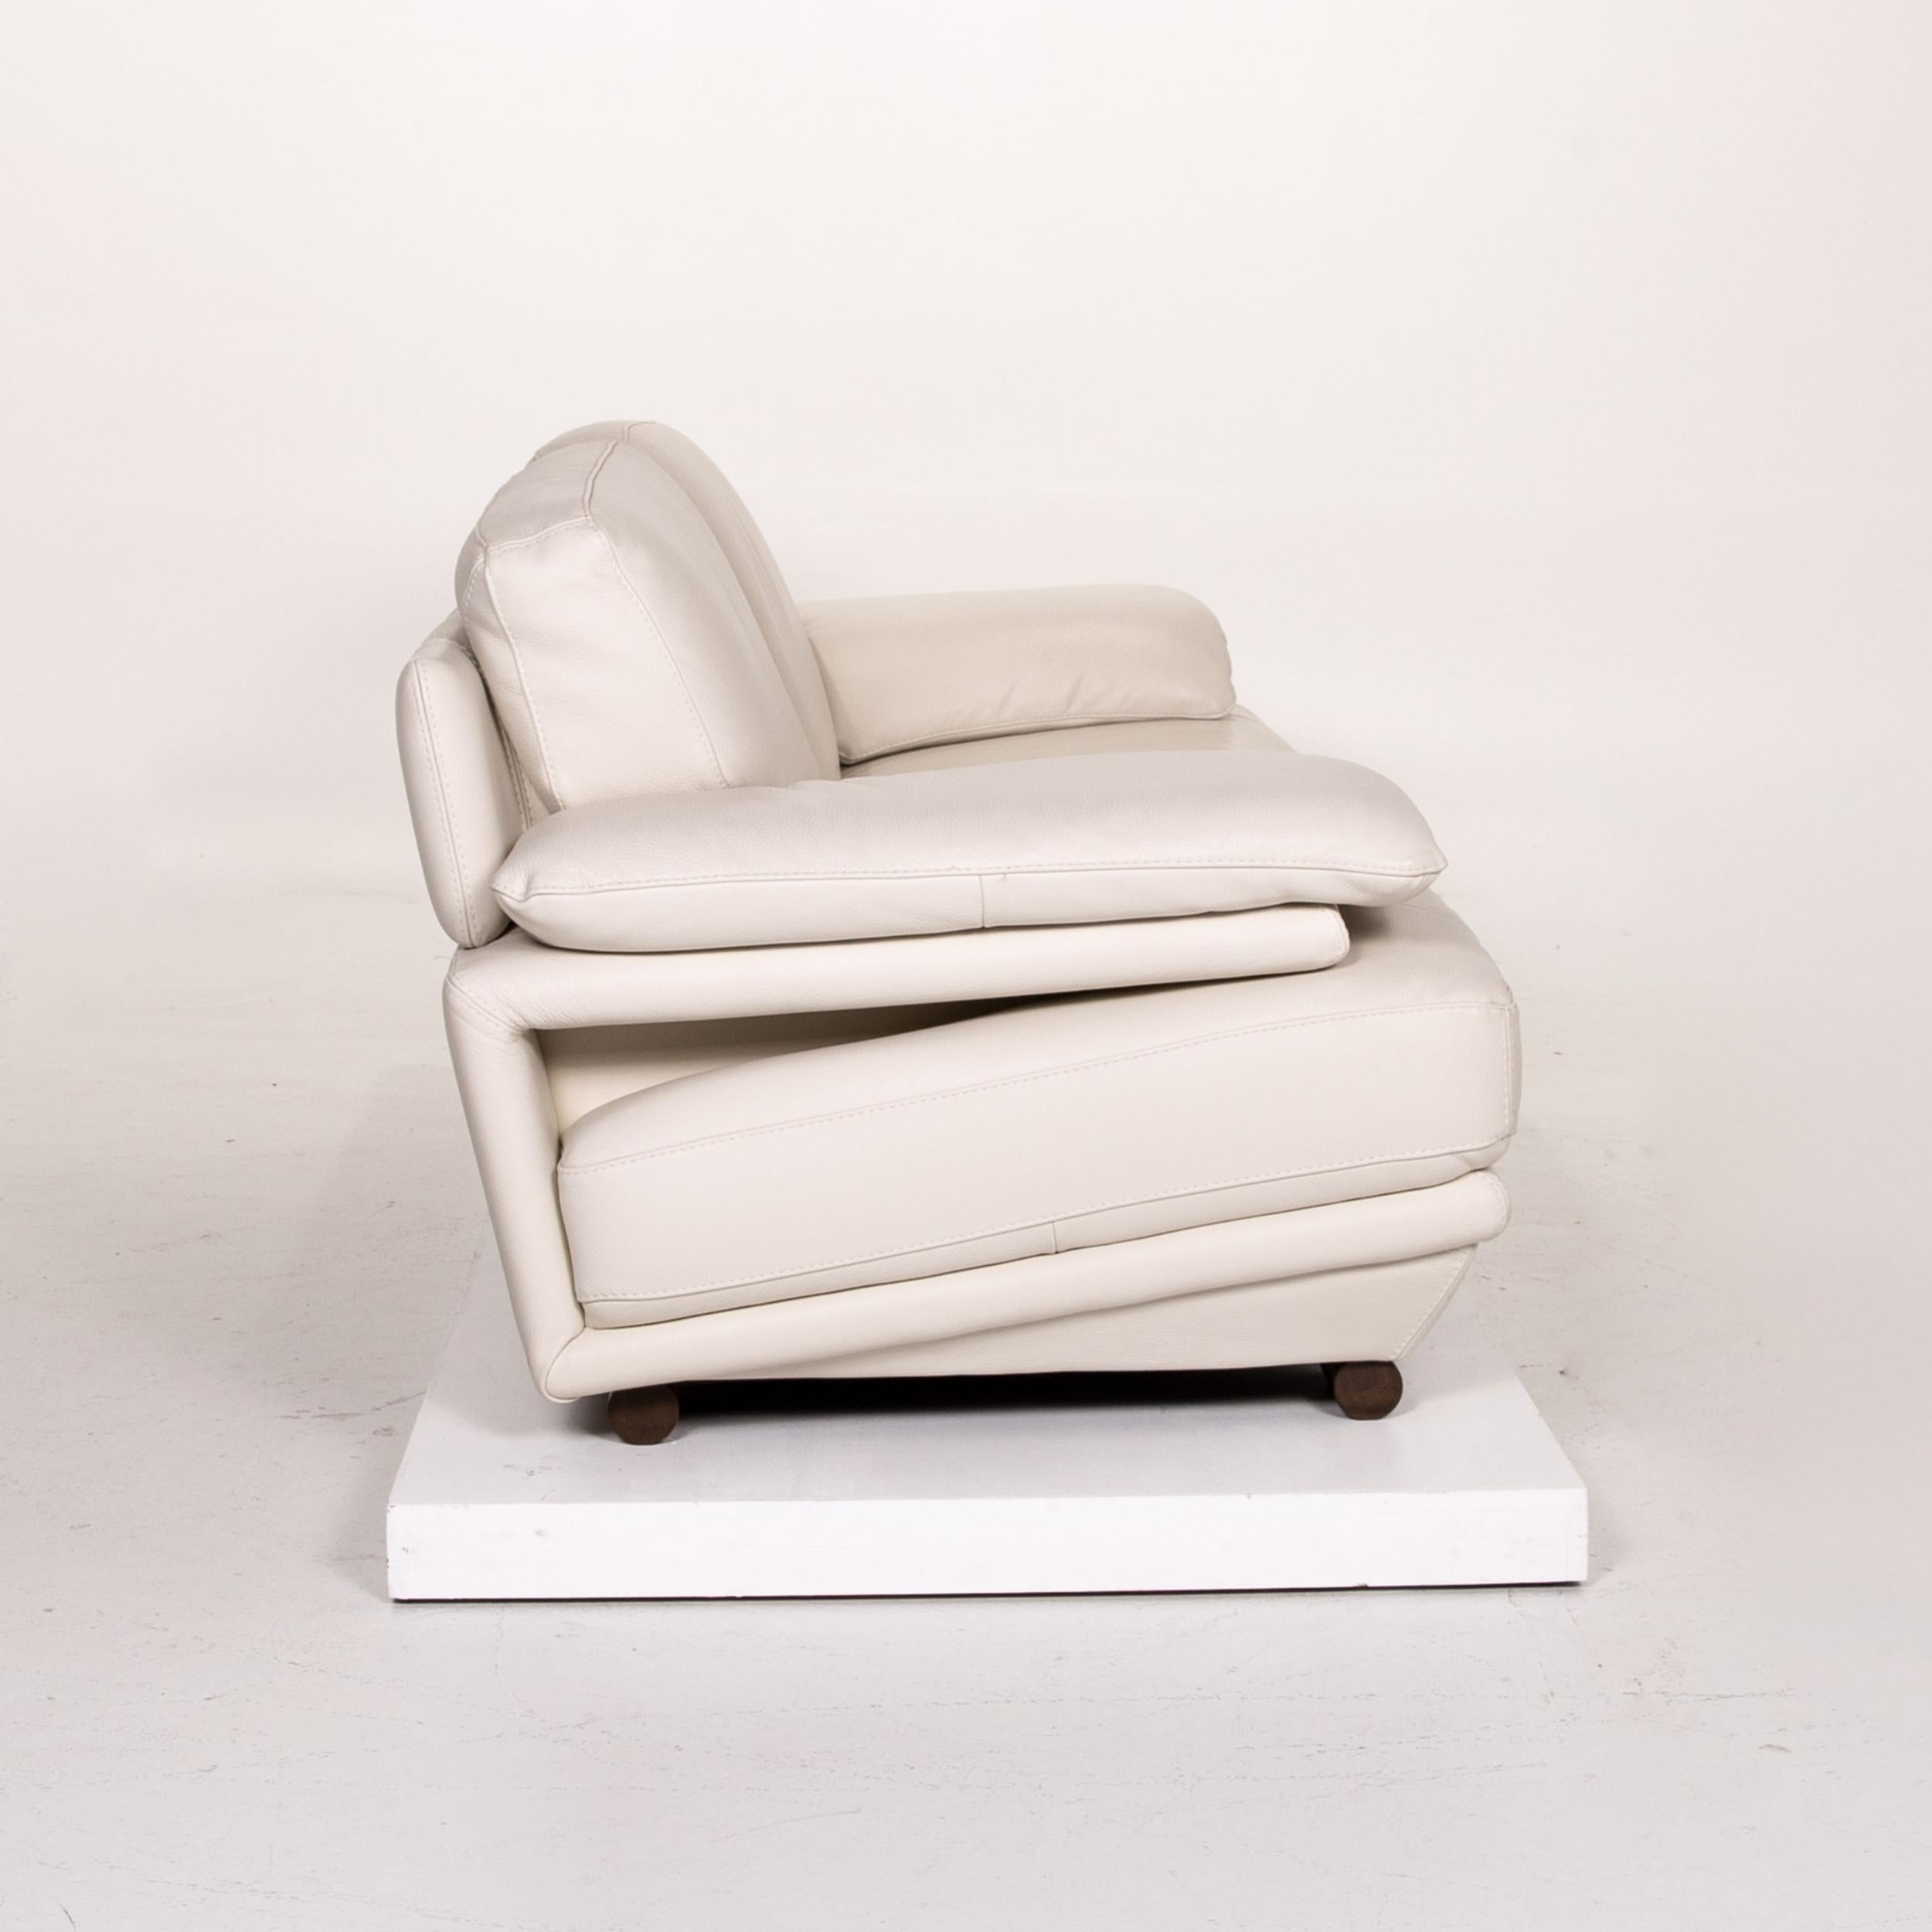 Contemporary Natuzzi Leather Sofa Cream Three-Seat Couch